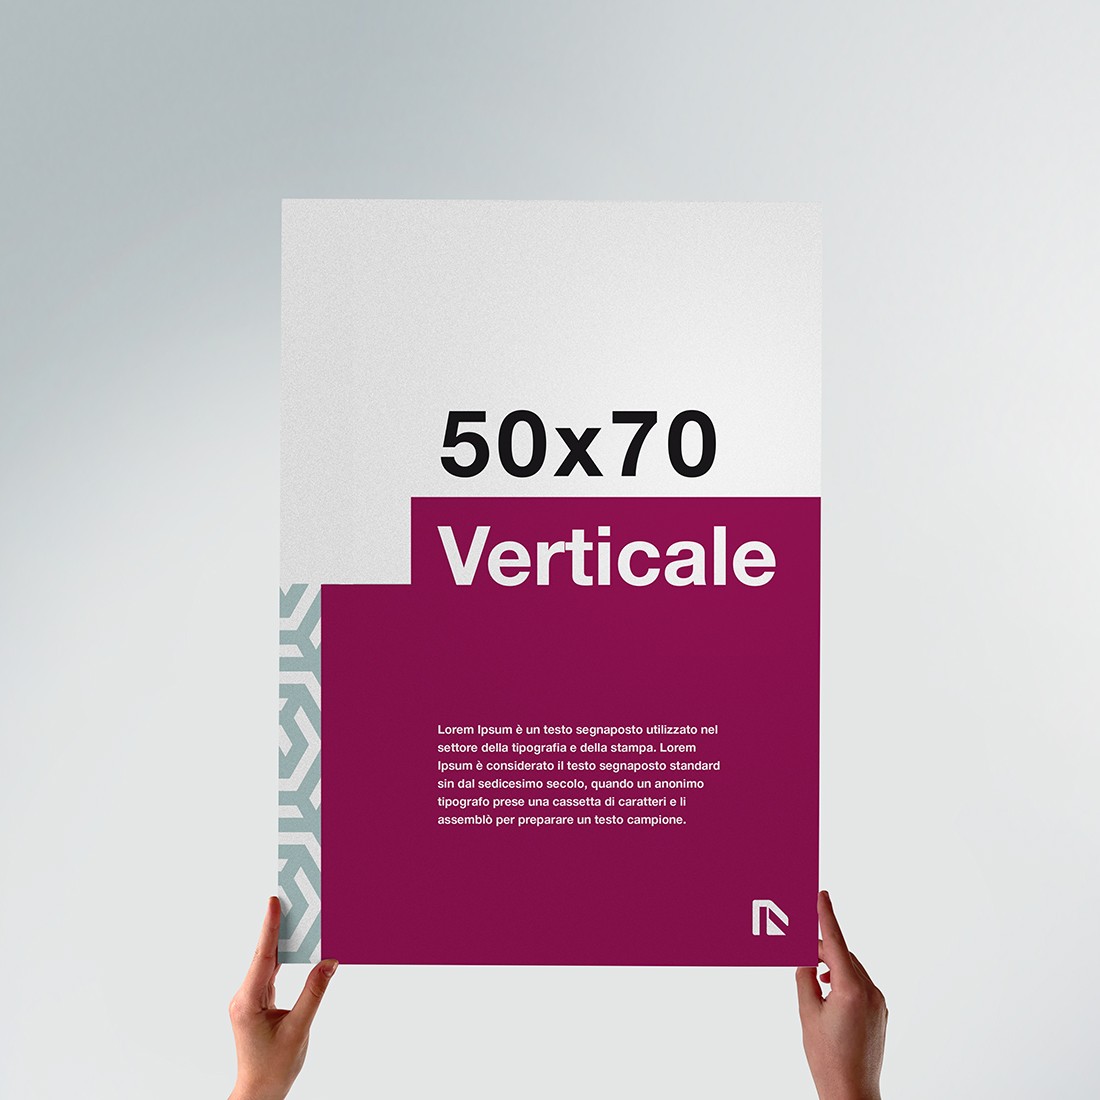 Poster 50x70: crea online foglio 50x70 verticale stampato.